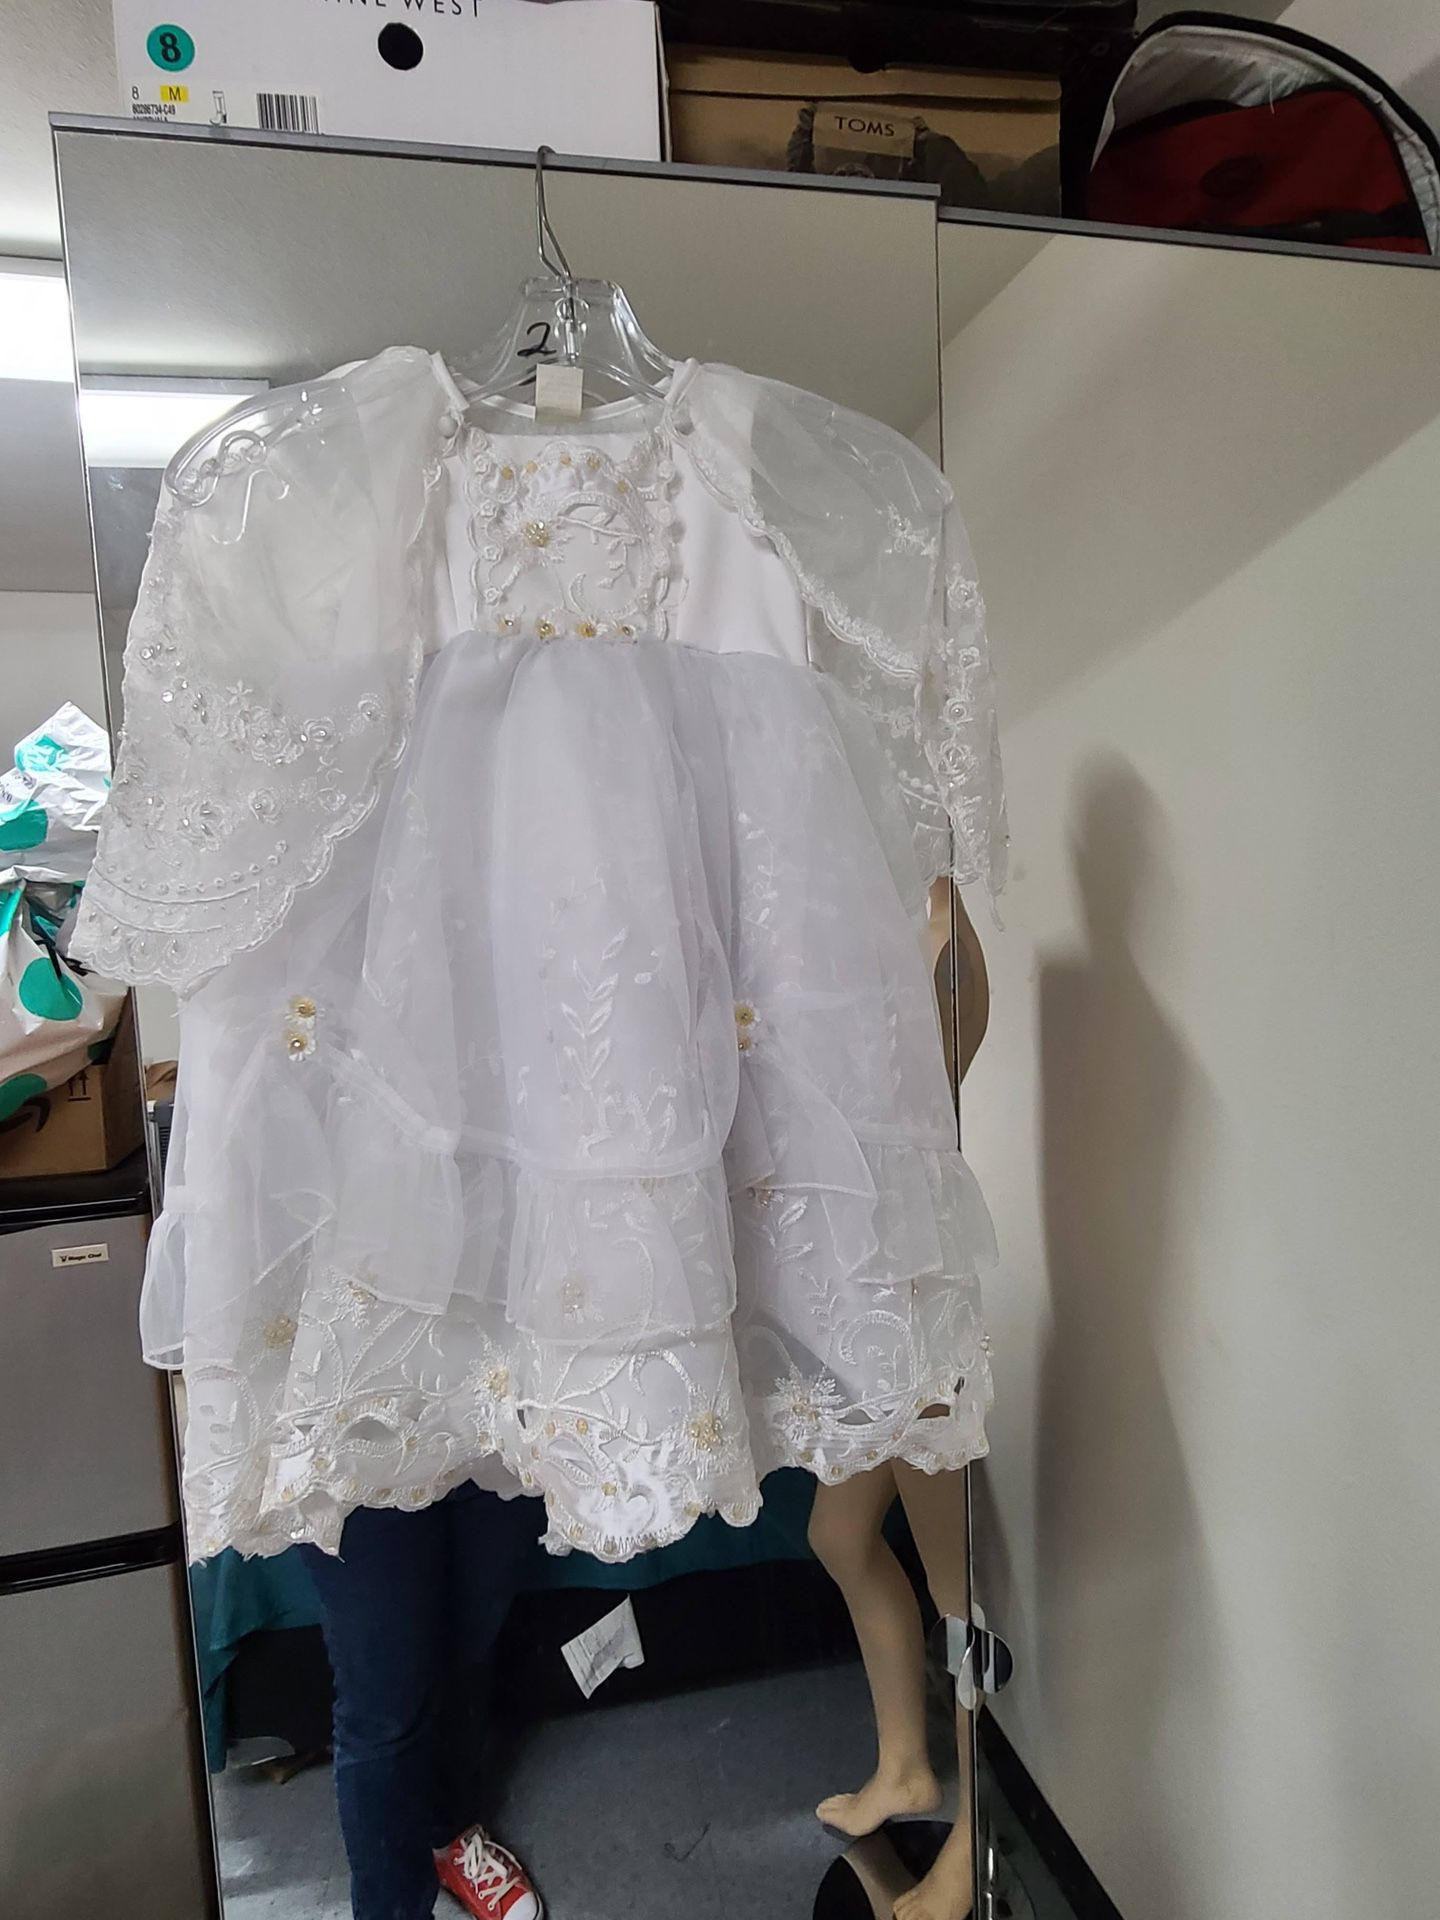 Flower Girl Wedding Dress